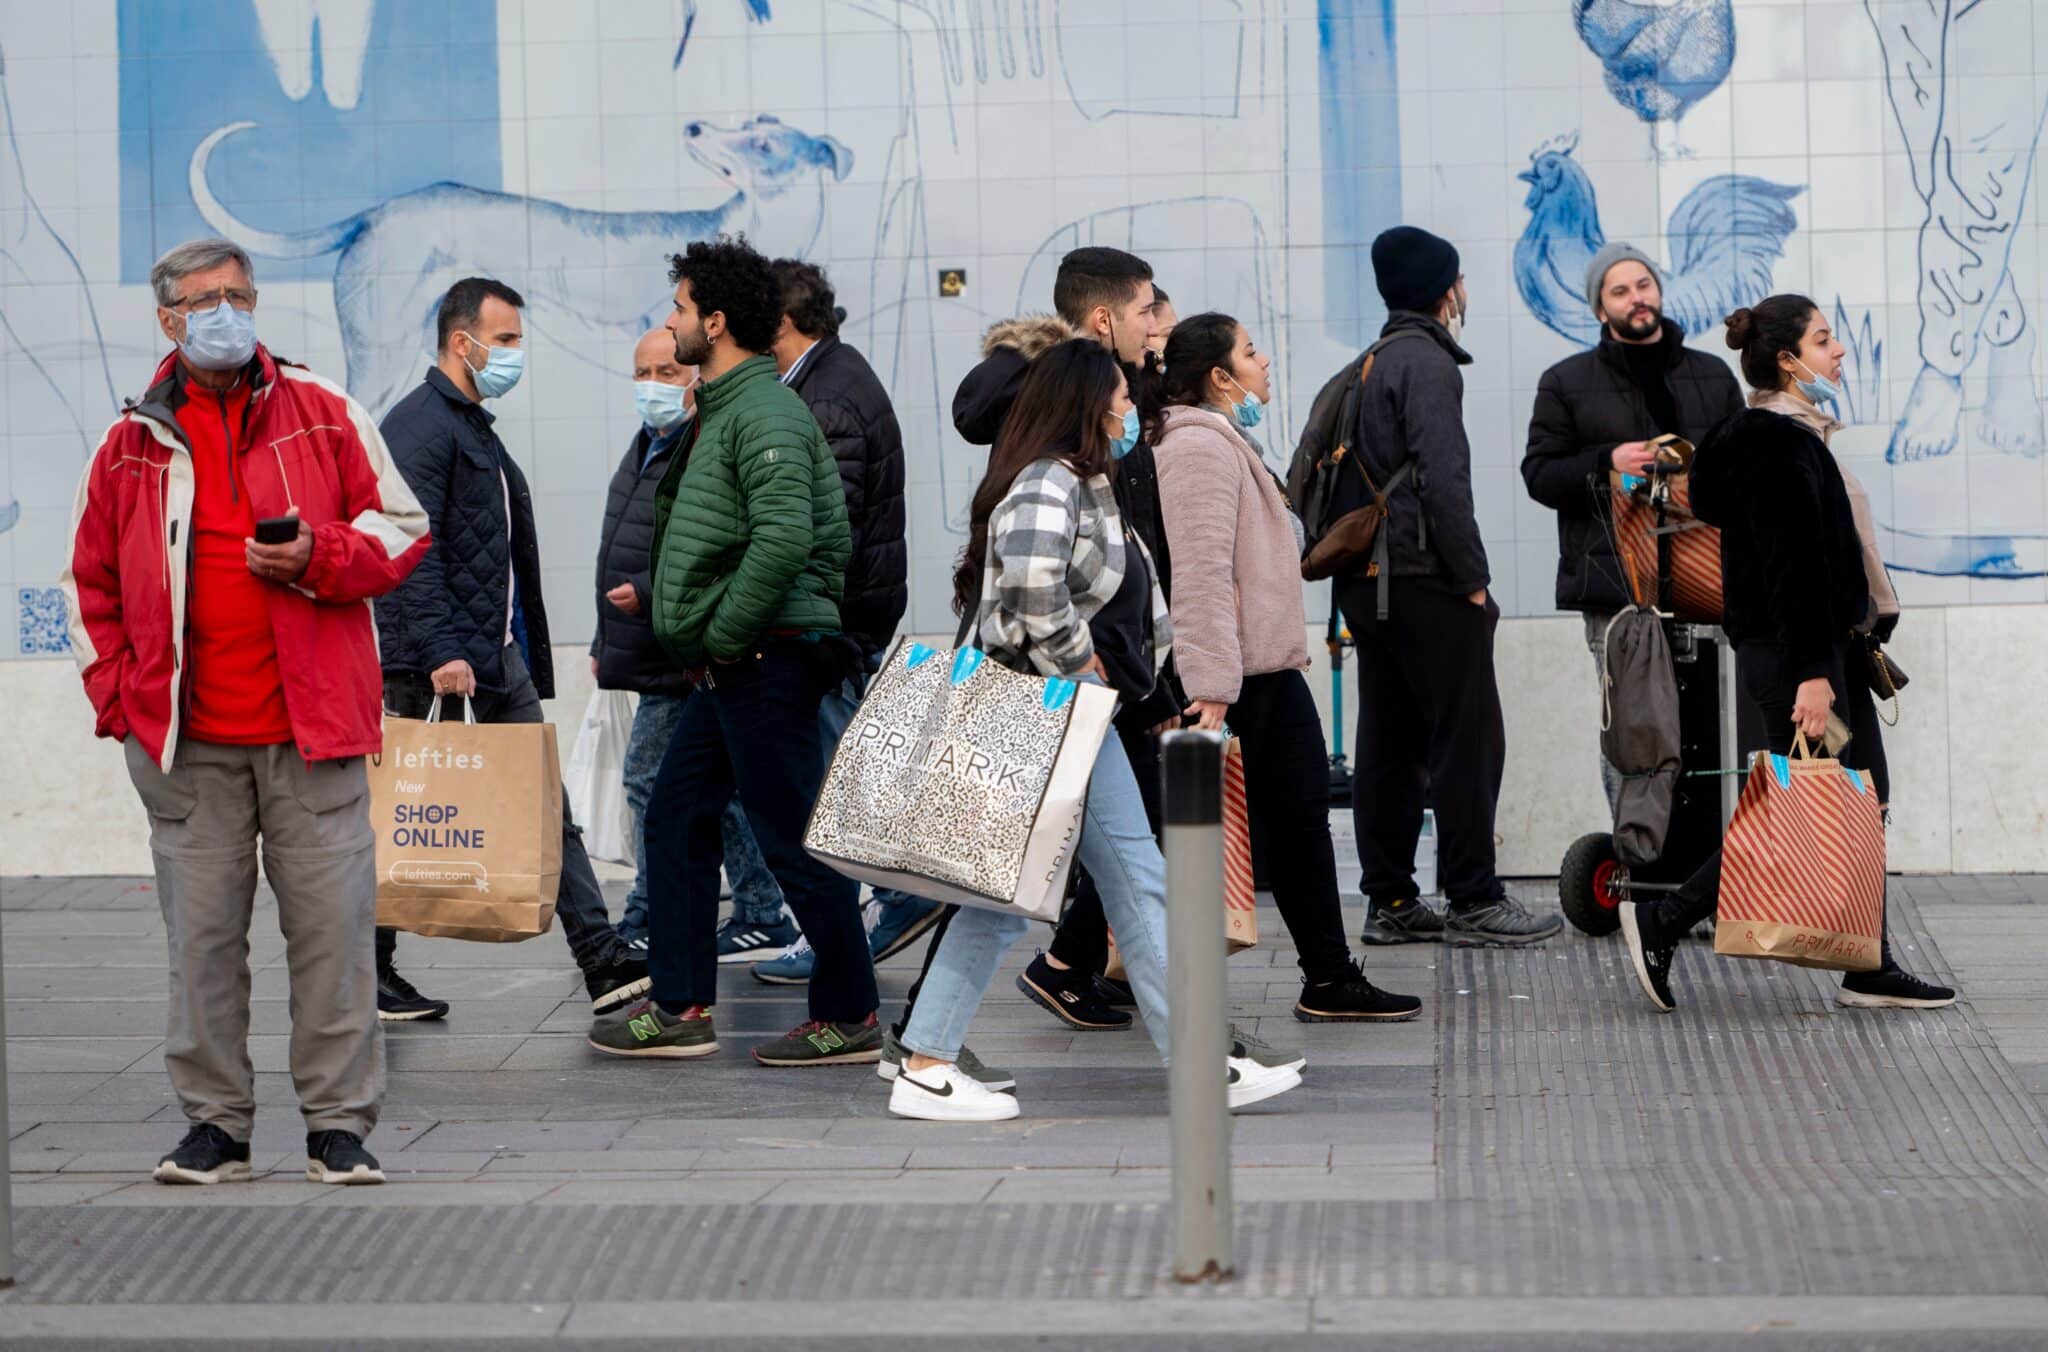 Varias personas caminan con bolsas con compras en Madrid.